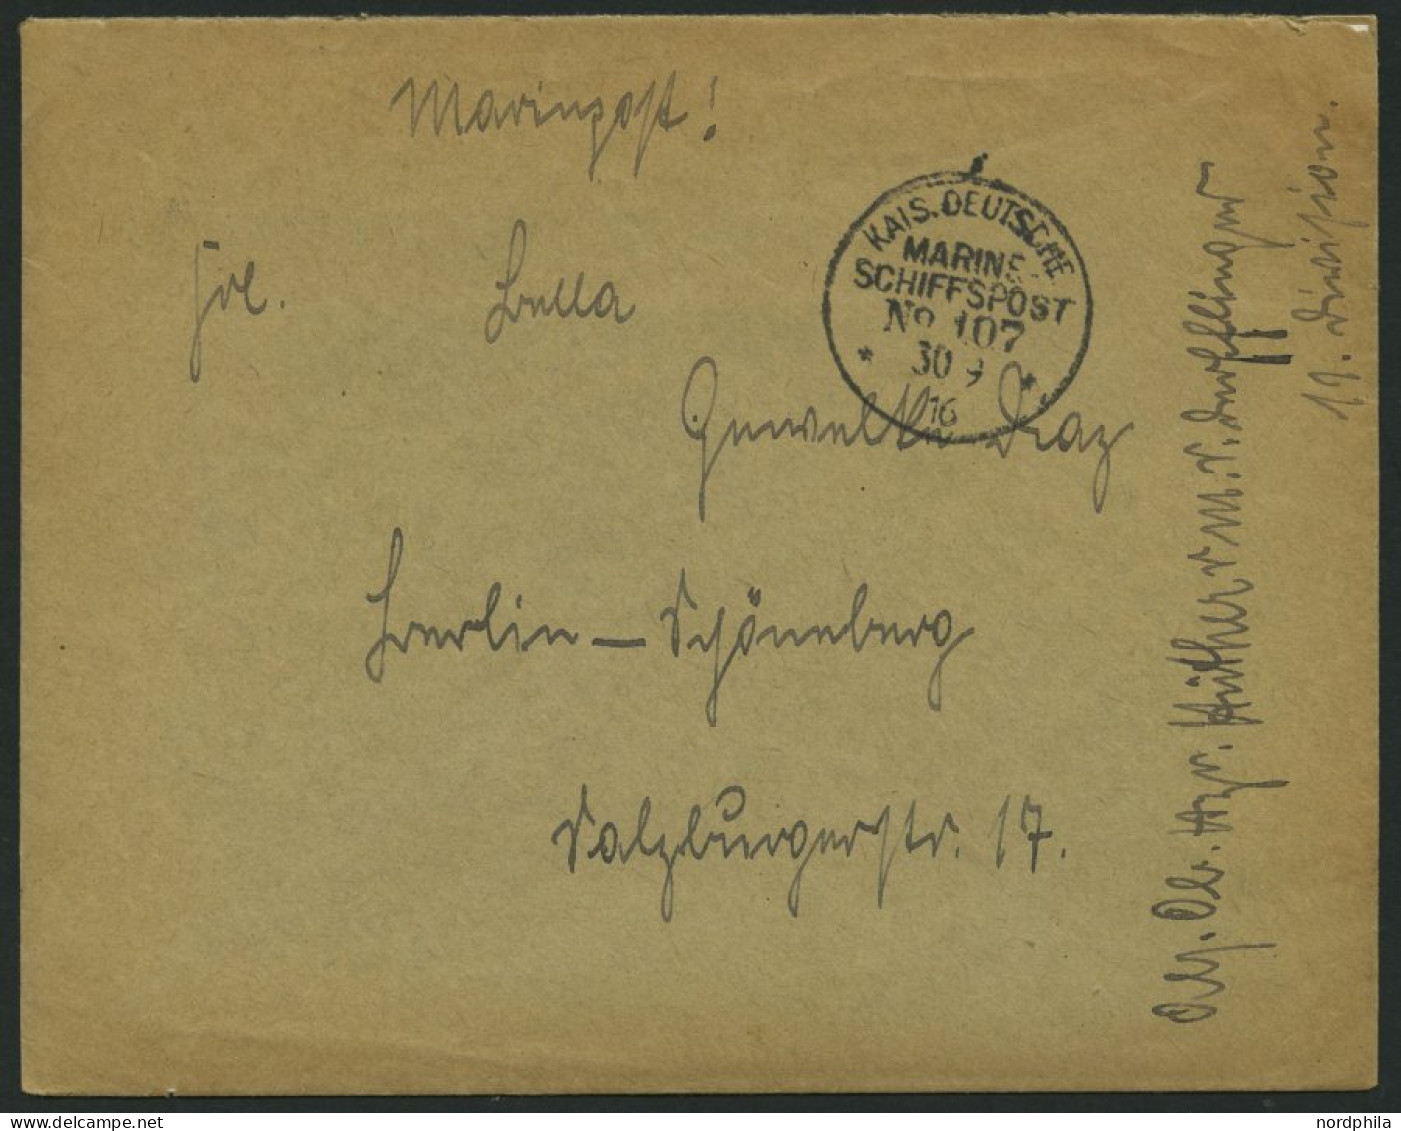 MSP VON 1914 - 1918 107 (Schlachtkreuzer DERFFLINGER), 30.9.1916, Feldpostbrief Von Bord Der Derfflinger, Pracht - Schiffahrt